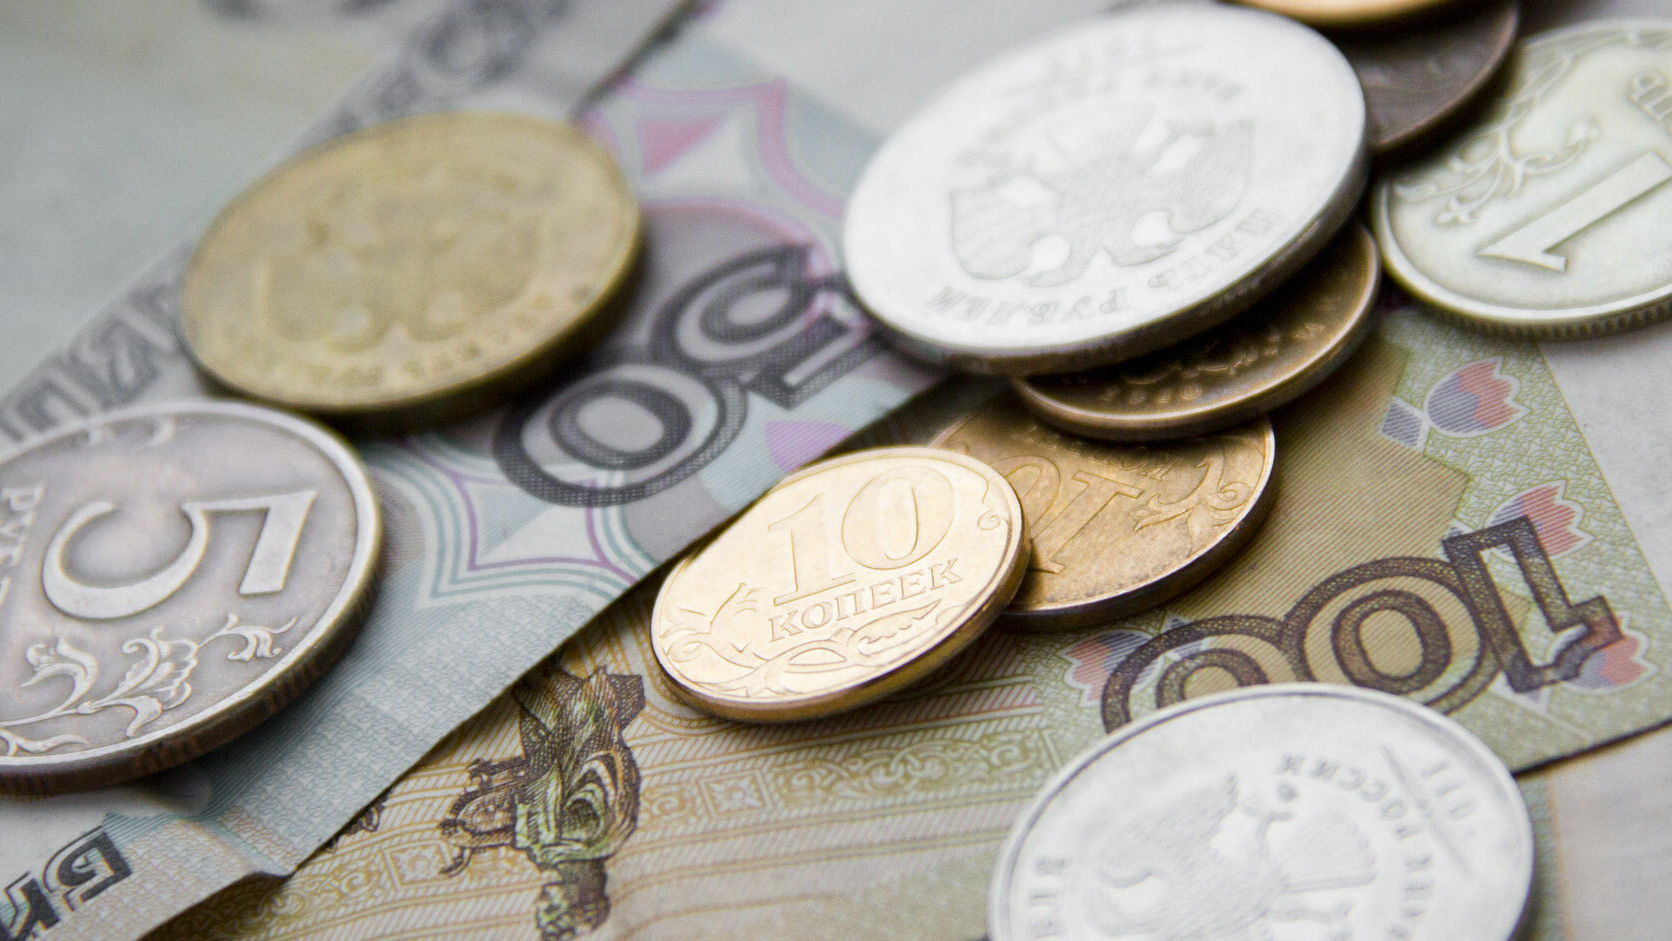 Прожиточный минимум в Пермском крае вырос на 12 рублей до 9594 рублей